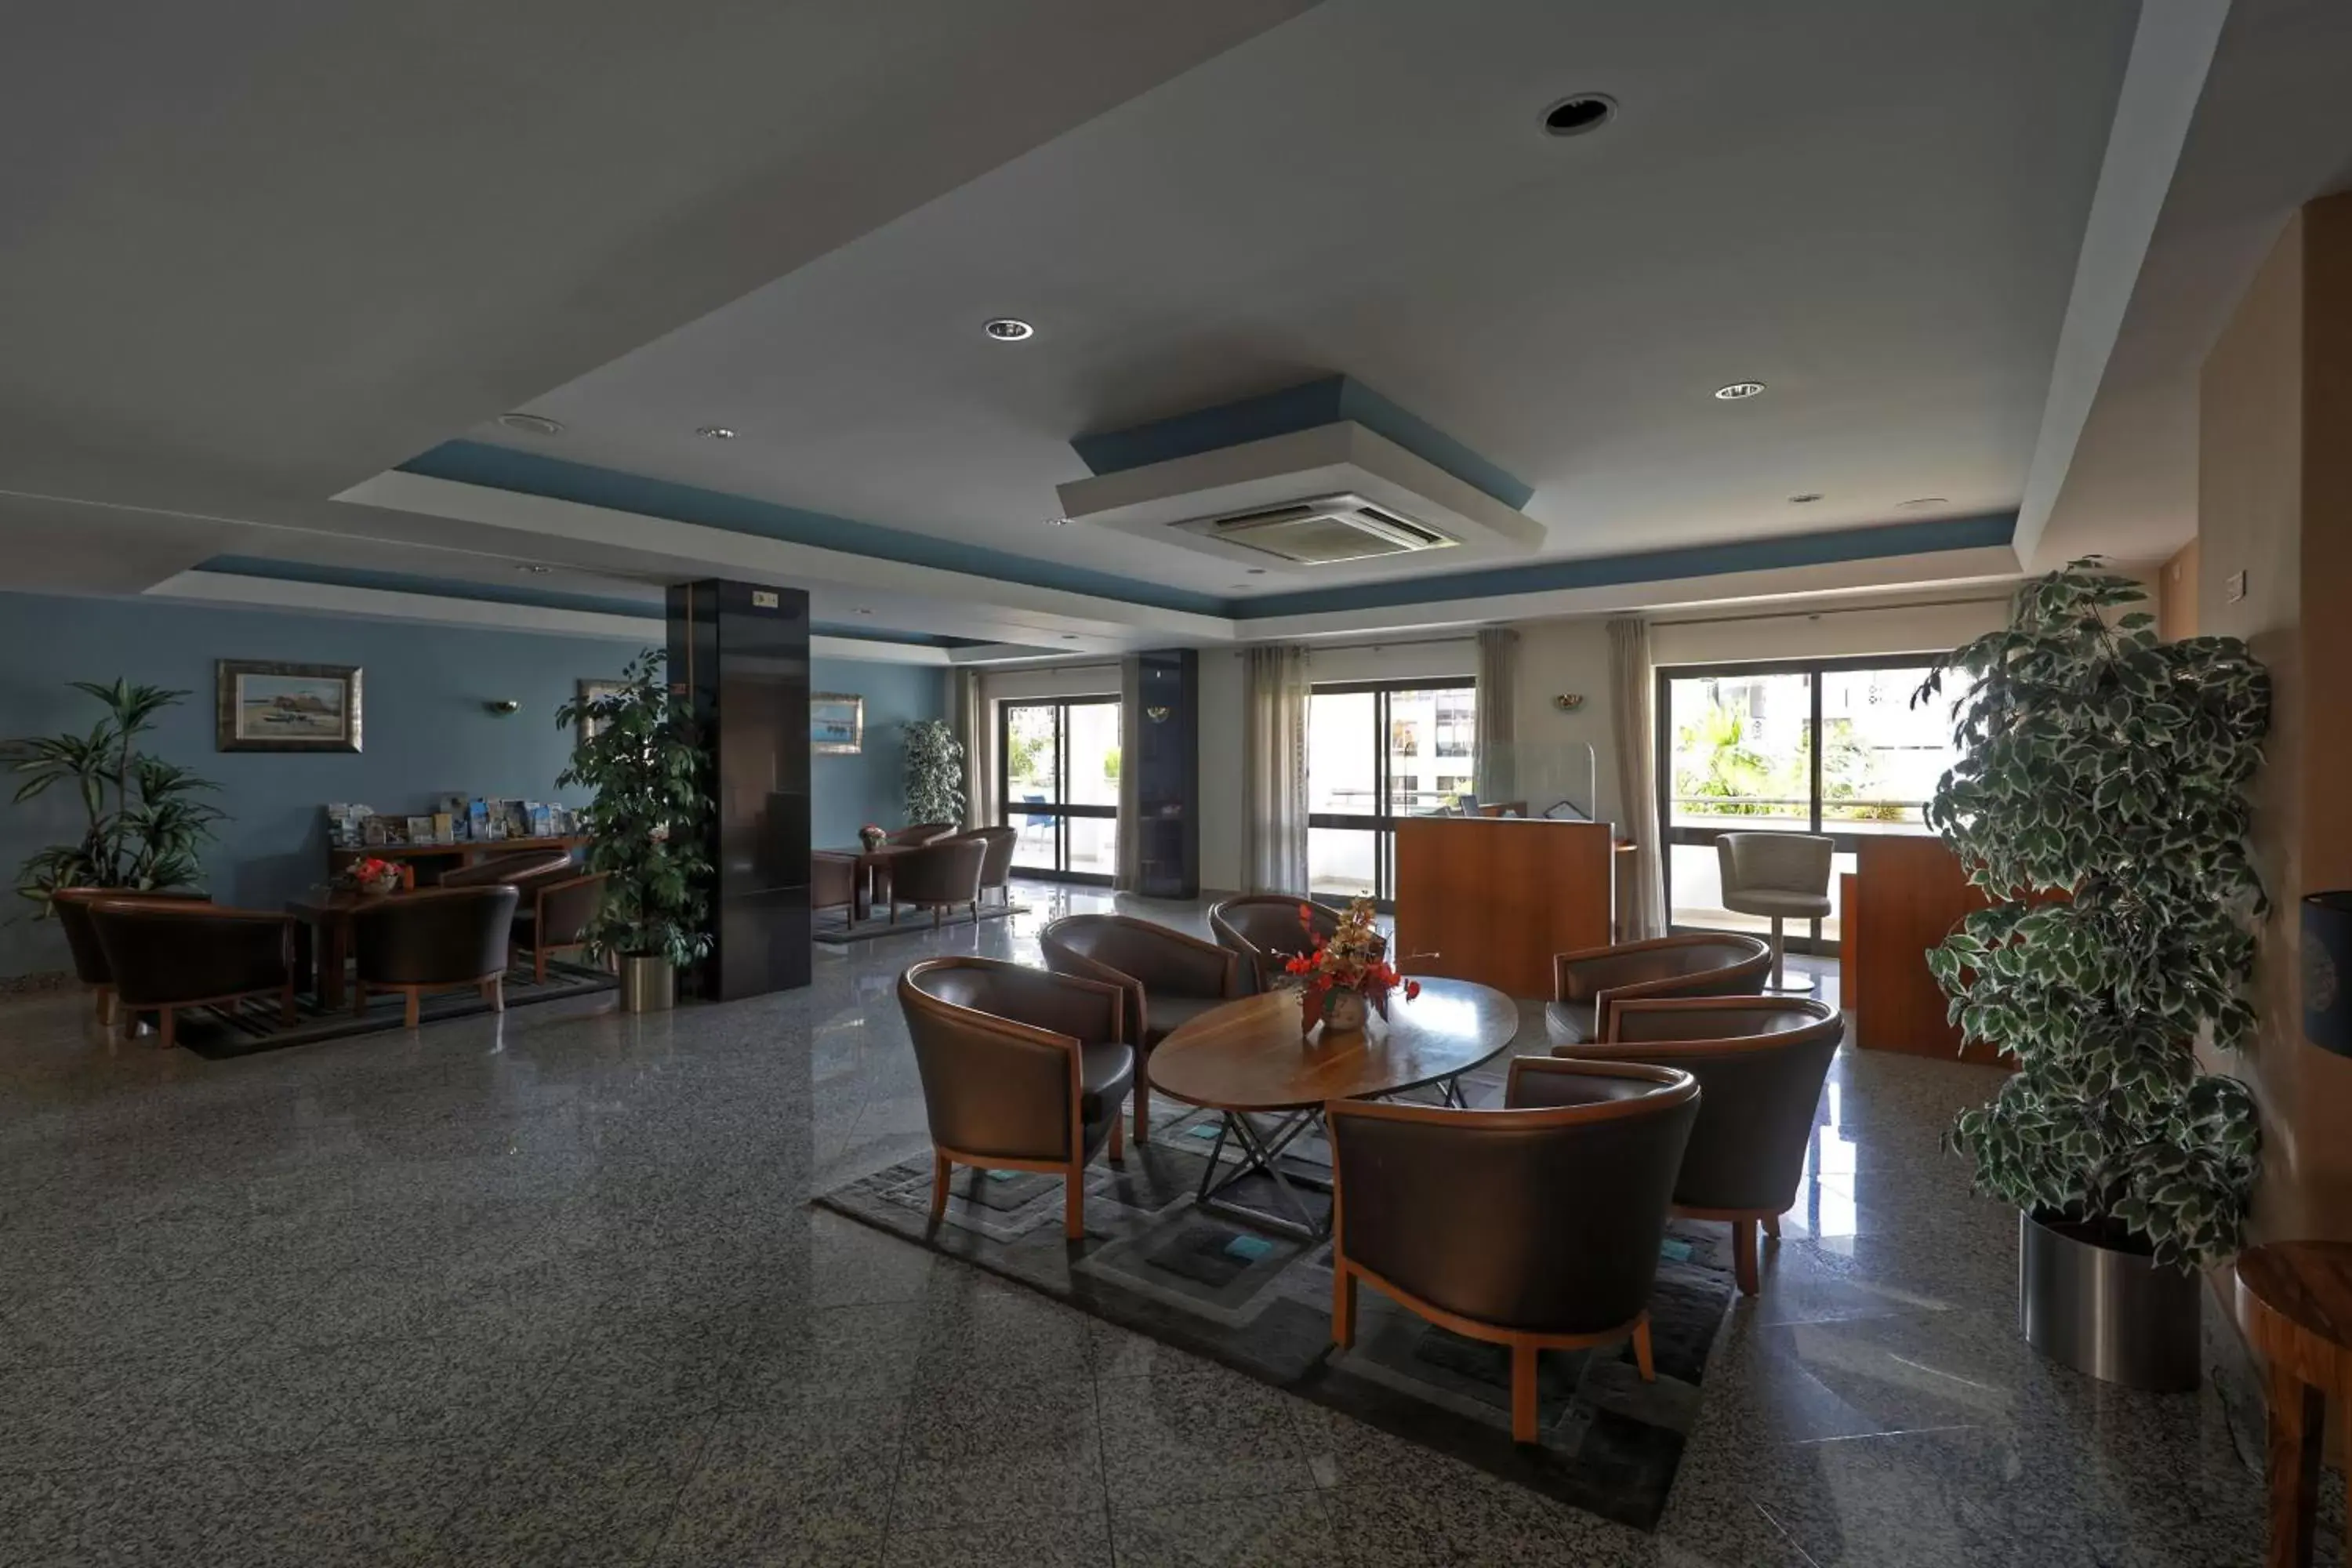 Lobby or reception in Aparthotel Paladim & Alagoamar